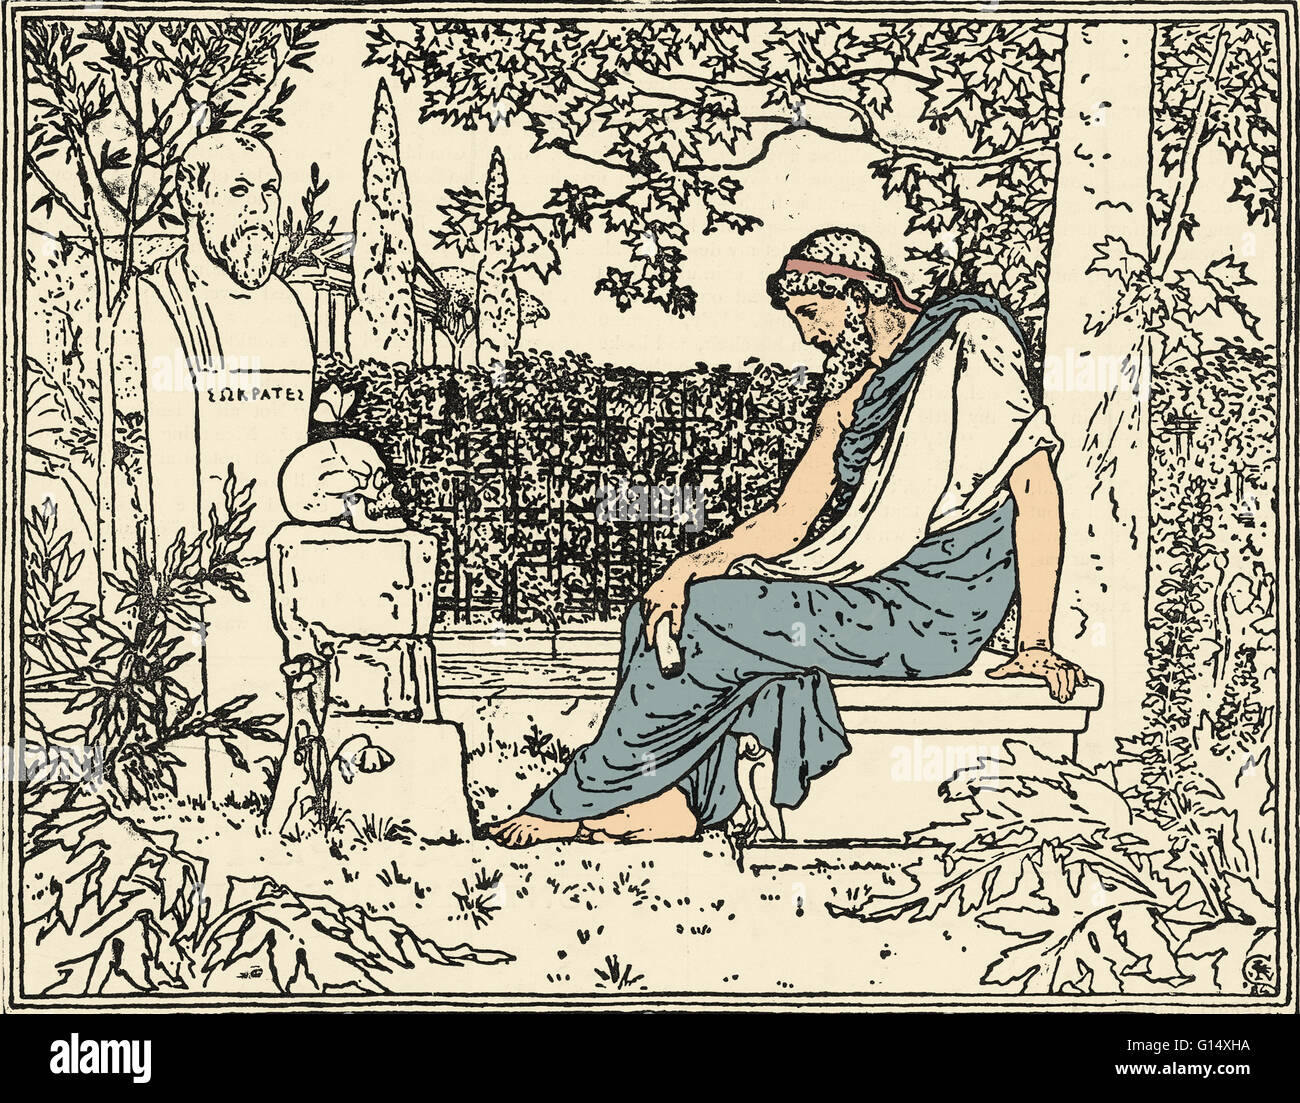 Plato meditieren auf Unsterblichkeit vor Sokrates, Schmetterling, Schädel und Mohn, um 400 v. Chr. war Plato (424/423-348/347 BC) eine klassische griechische Philosoph, Mathematiker, Schüler des Sokrates, Verfasser der philosophischen Dialoge und Gründer der Akademie Stockfoto